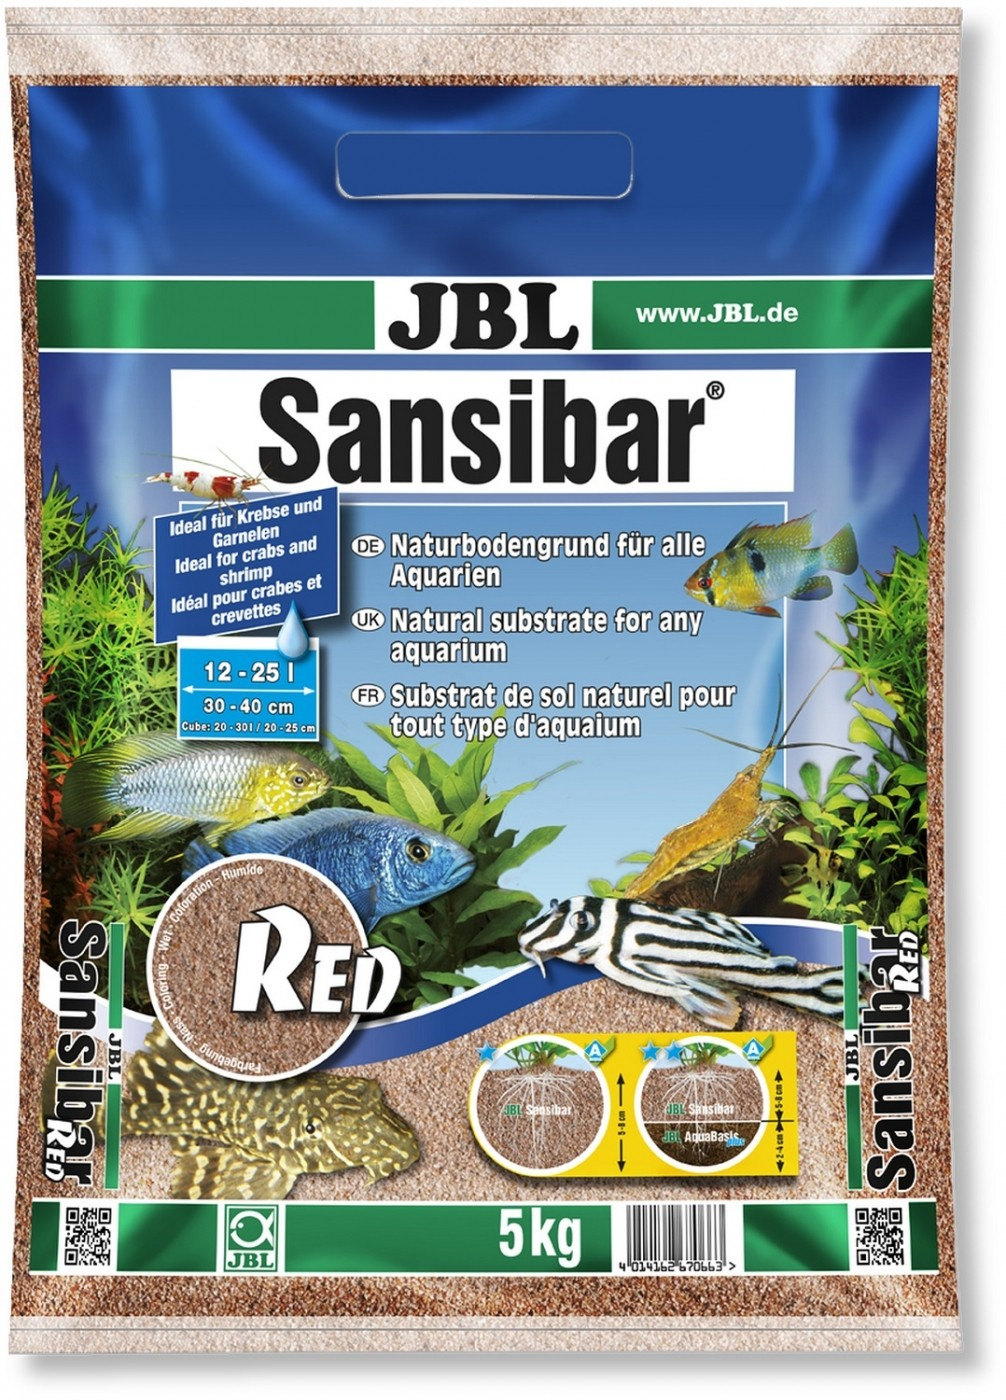 JBL Sansibar Red Sustrato rojo para acuarios